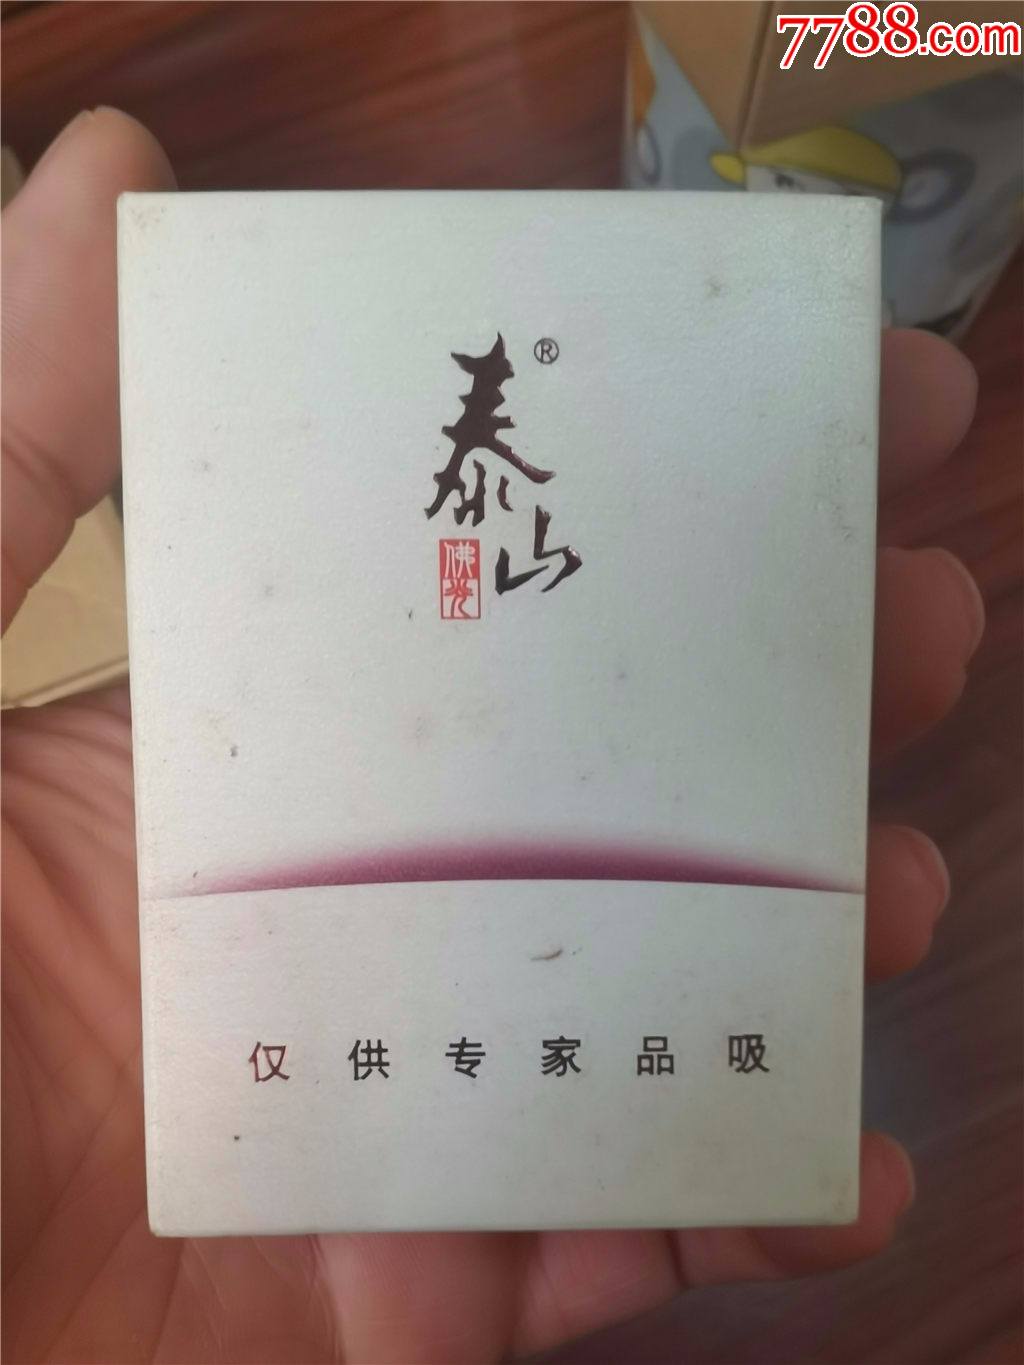 佛光（细支） - 香烟品鉴 - 烟悦网论坛